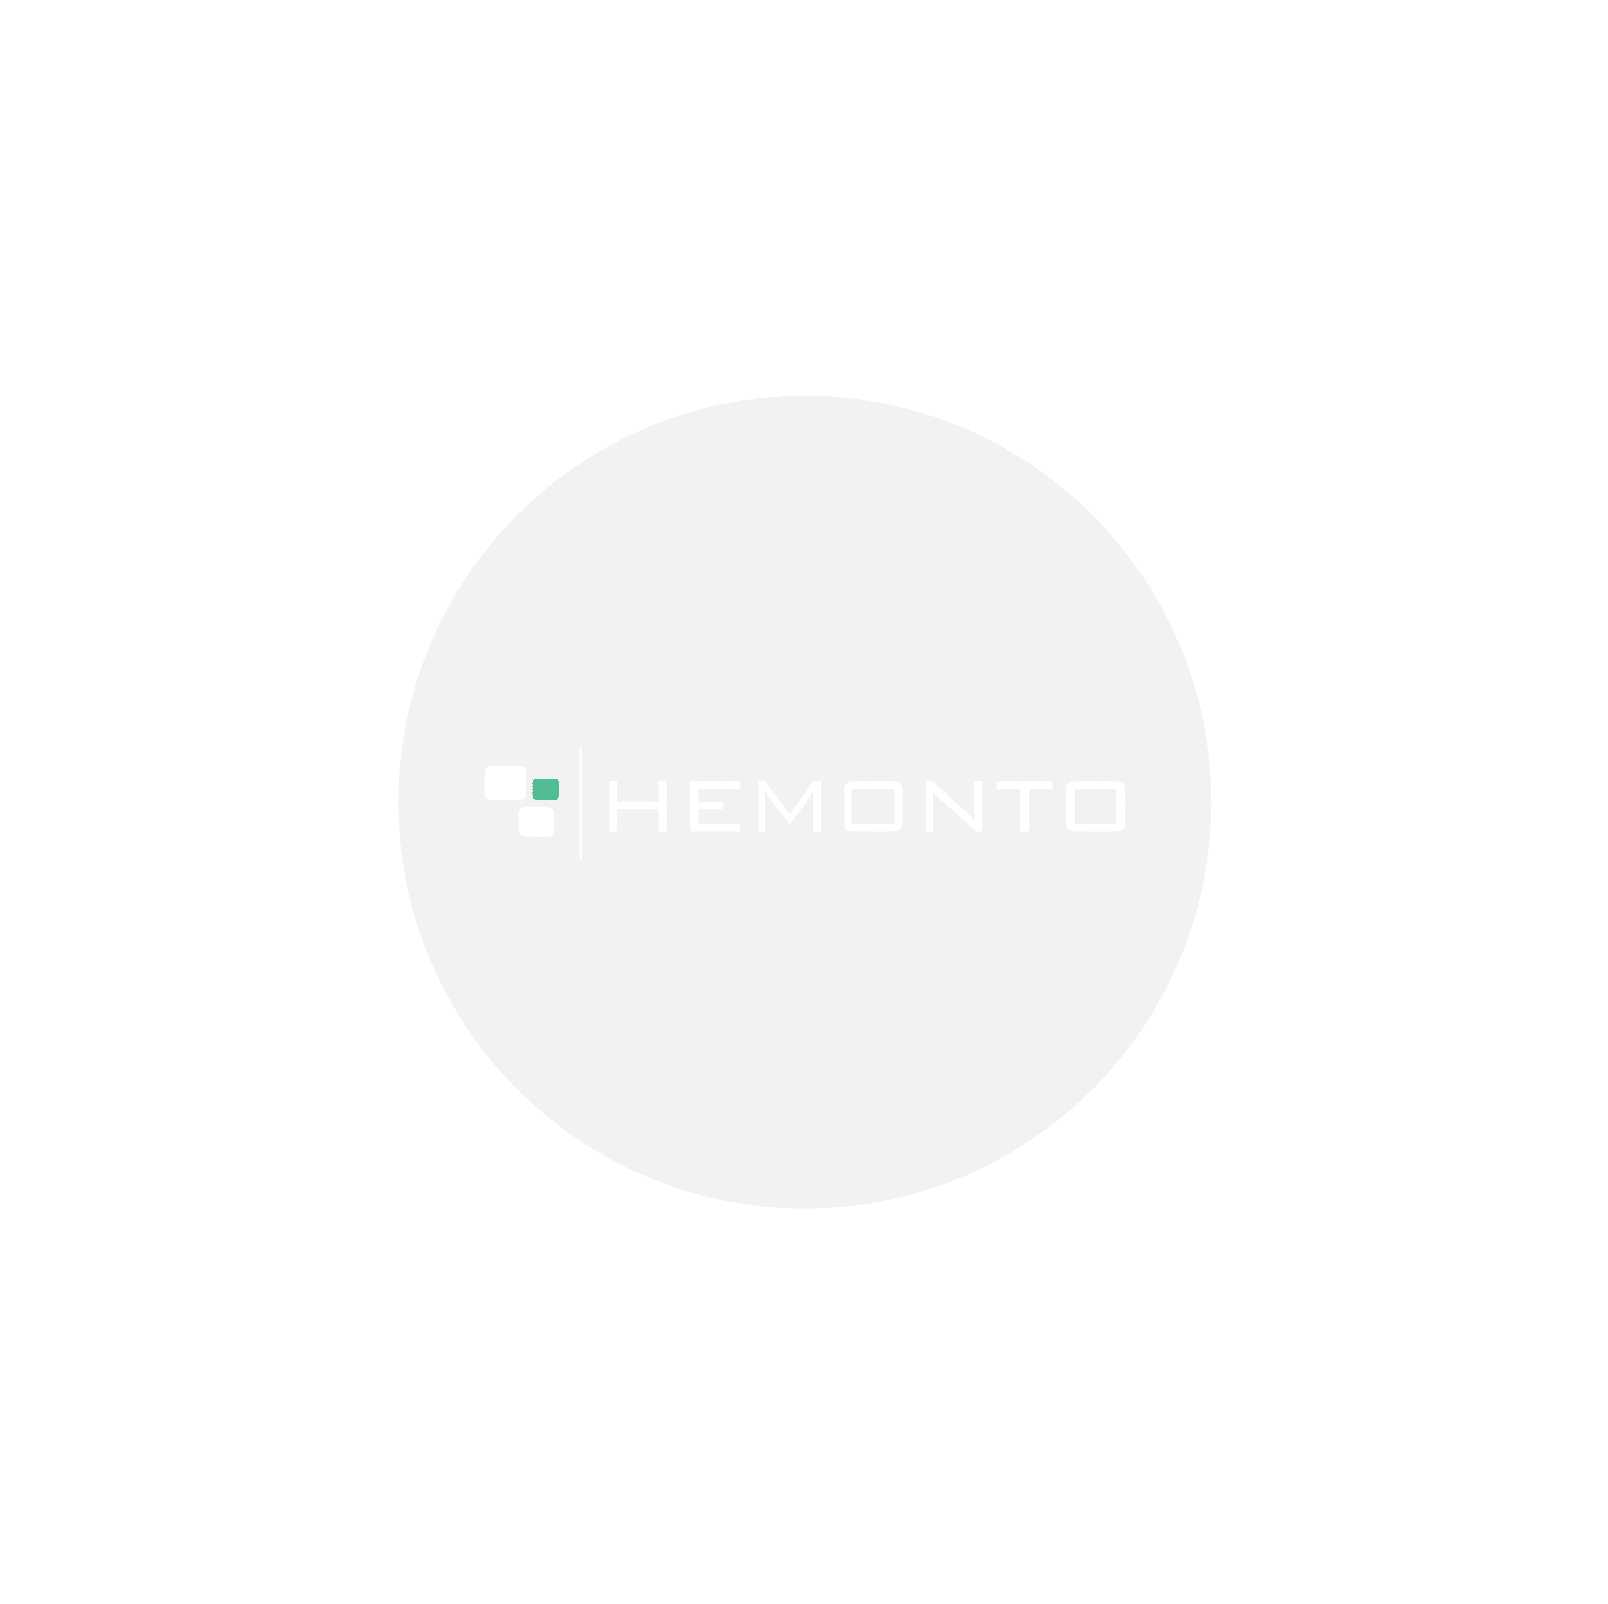 Hemonto logo preview